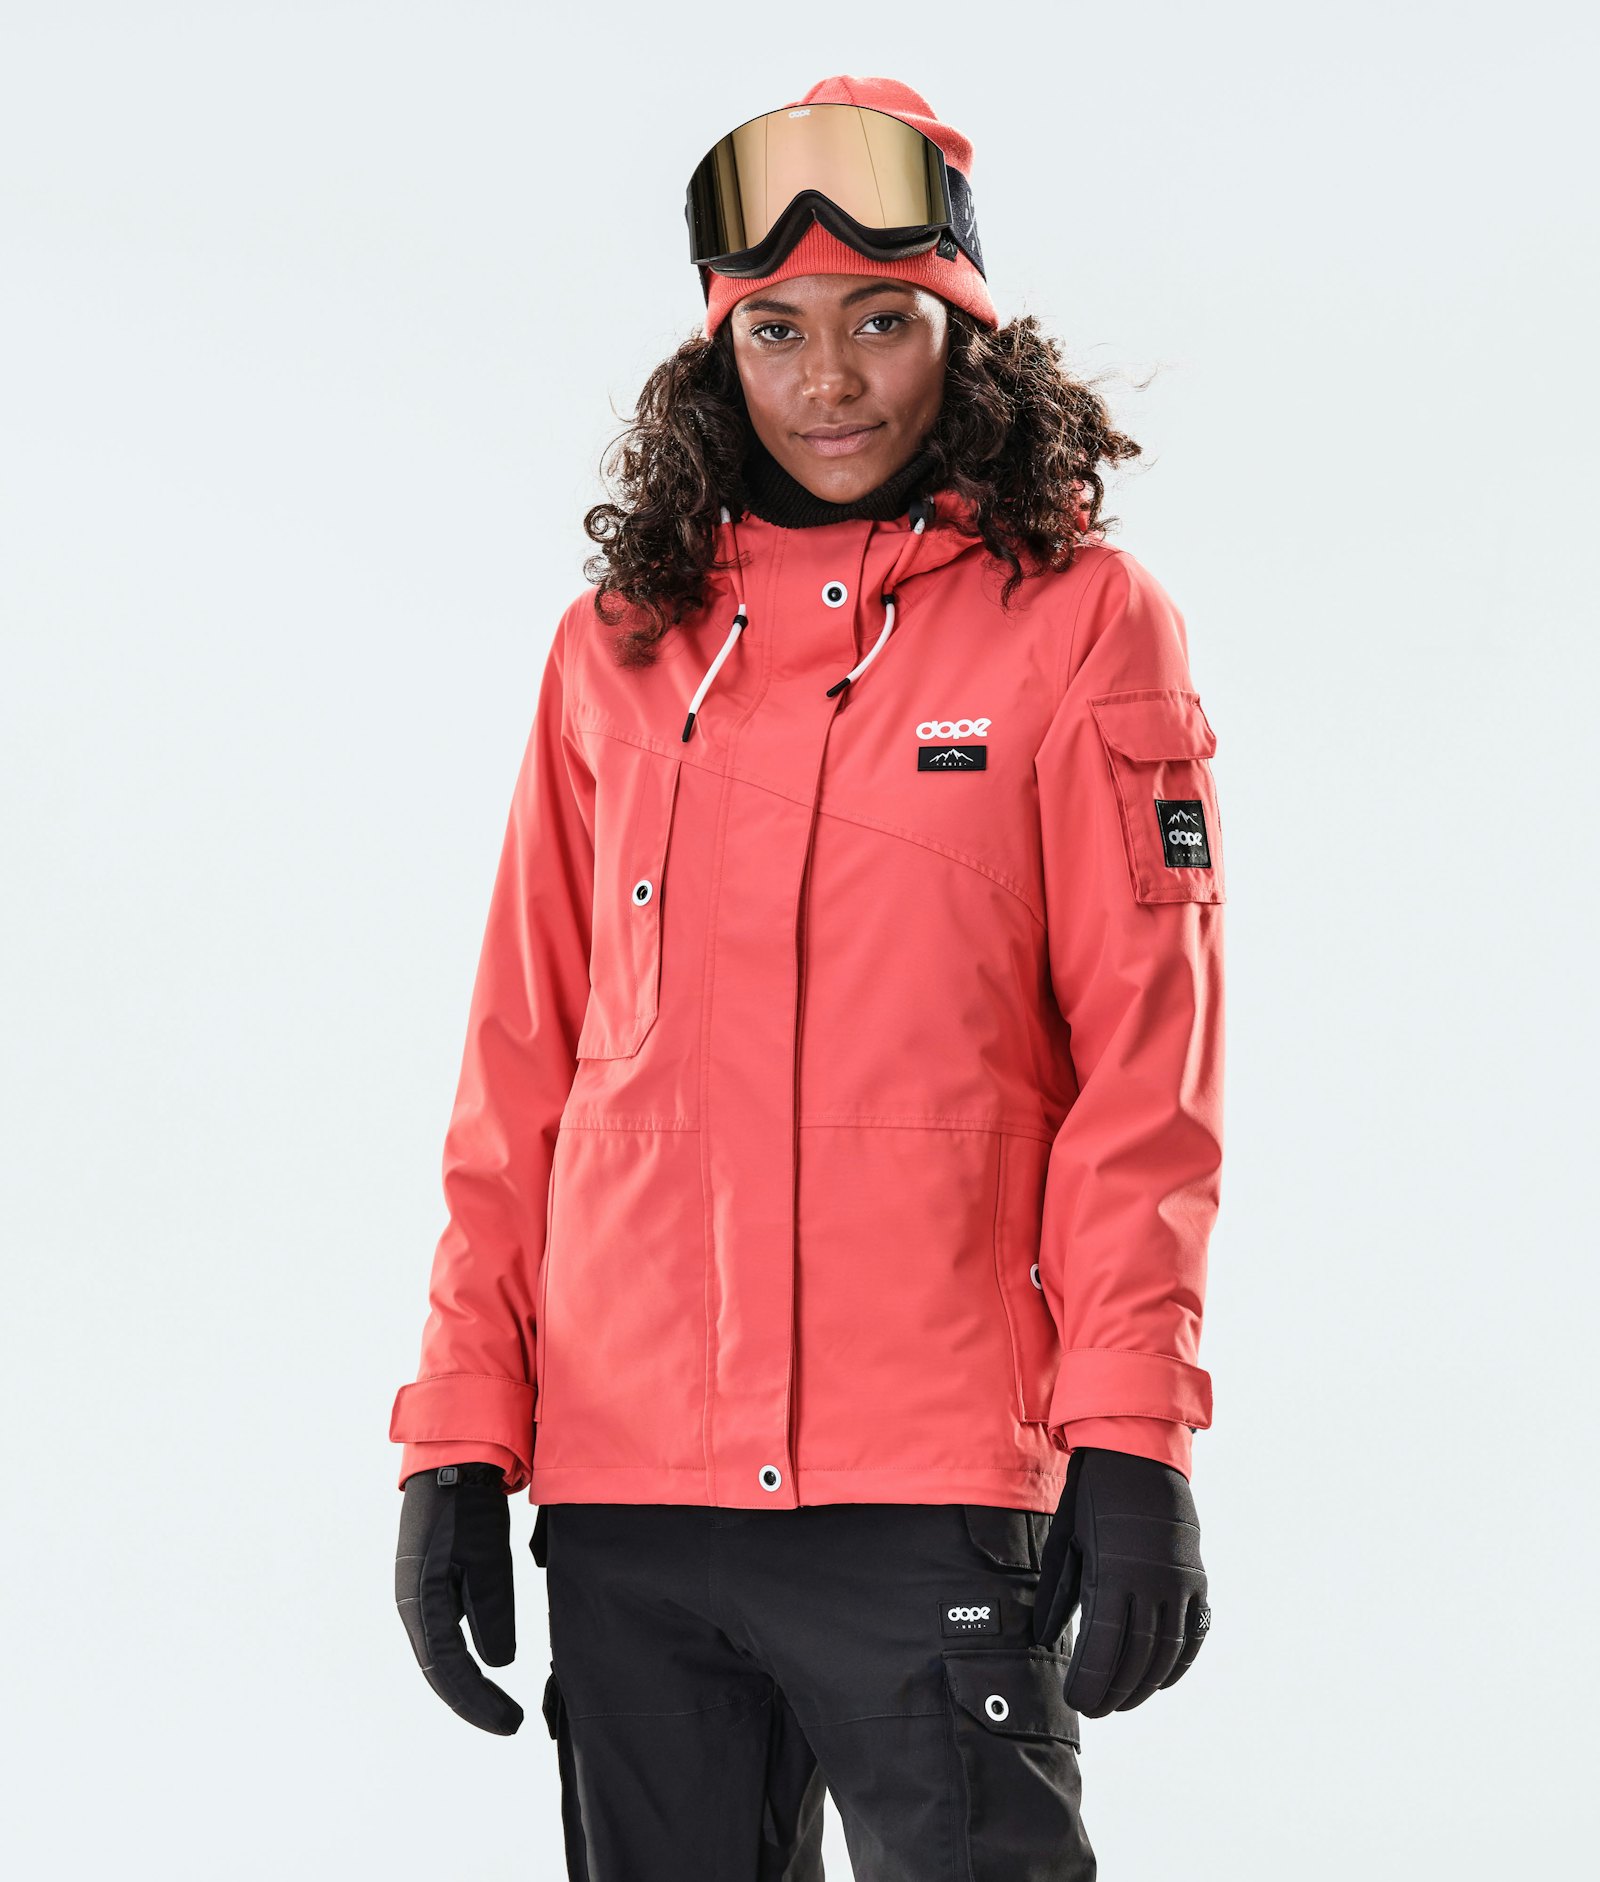 Adept W 2020 Veste Snowboard Femme Coral